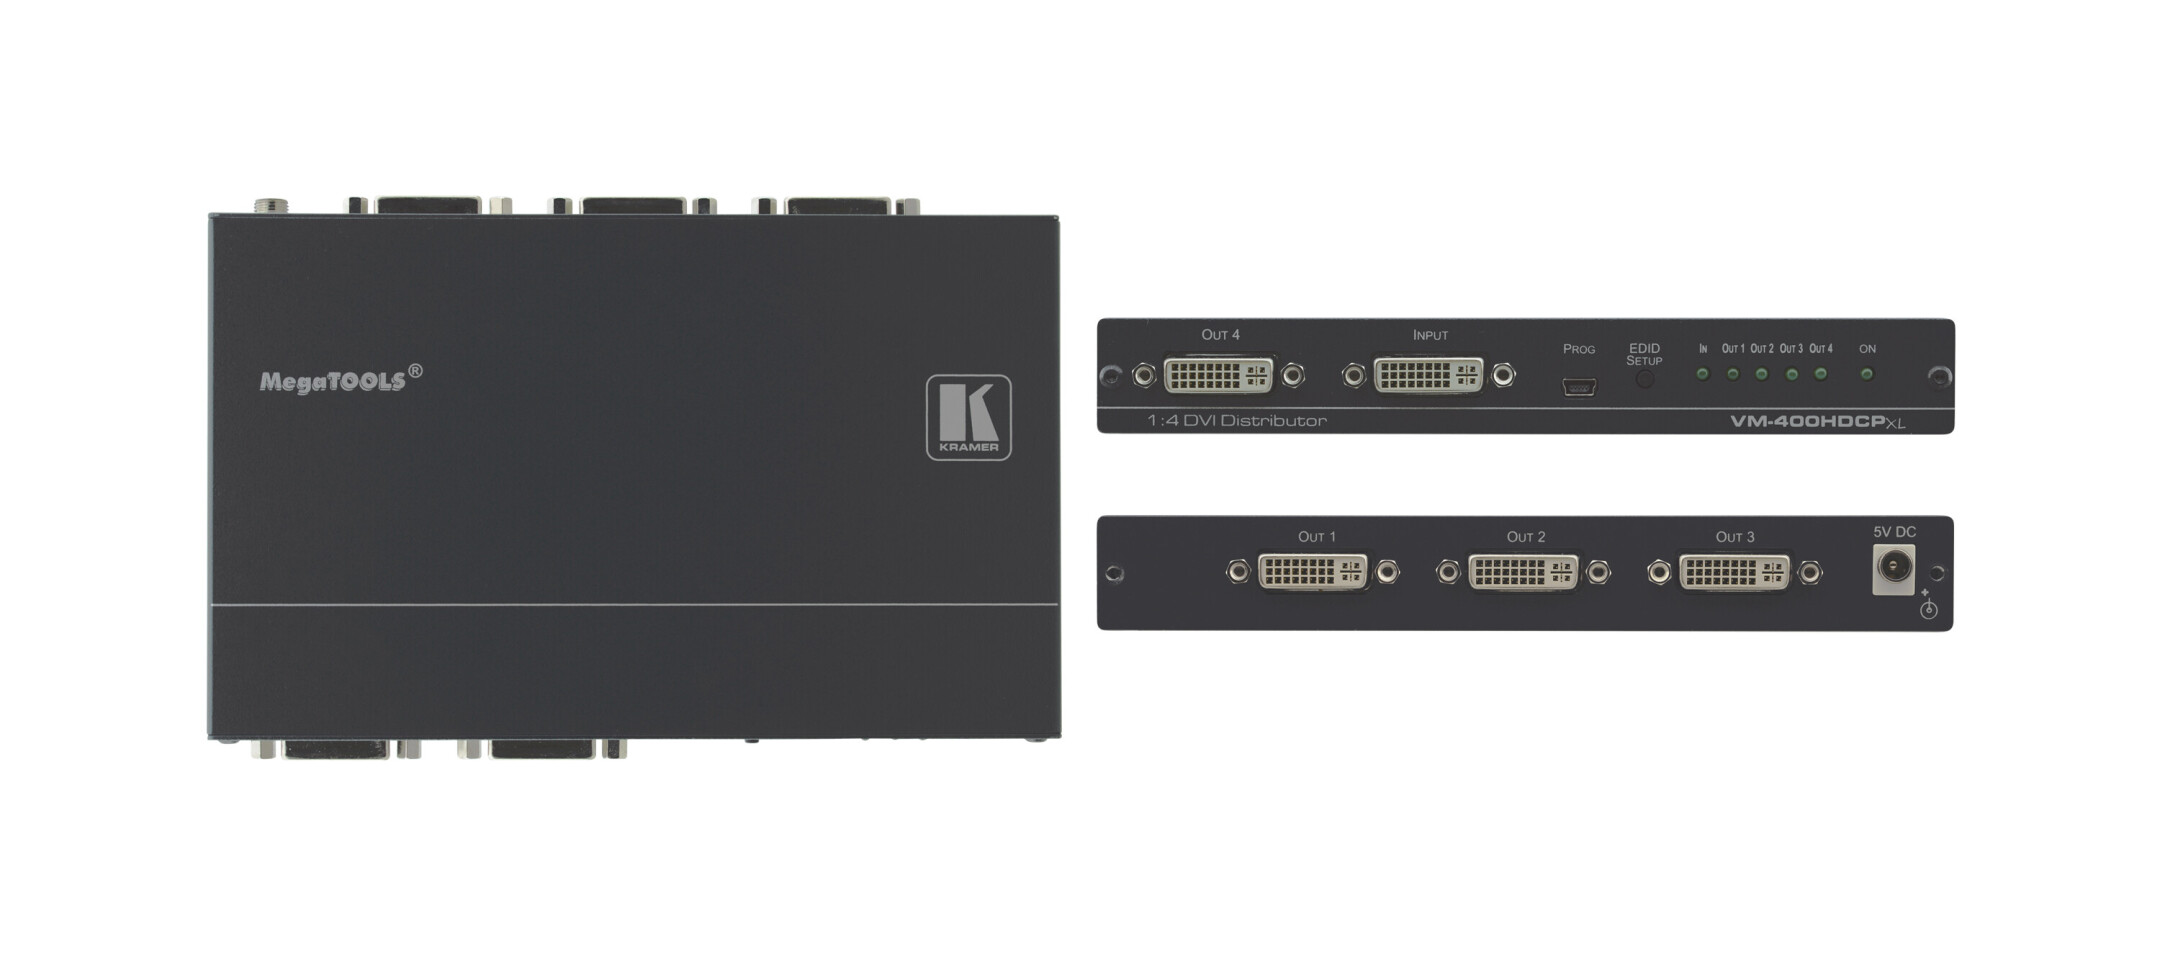 Kramer-VM-400HDCPxl1-4-4K60-4-2-0-DVI-verdeel-versterker